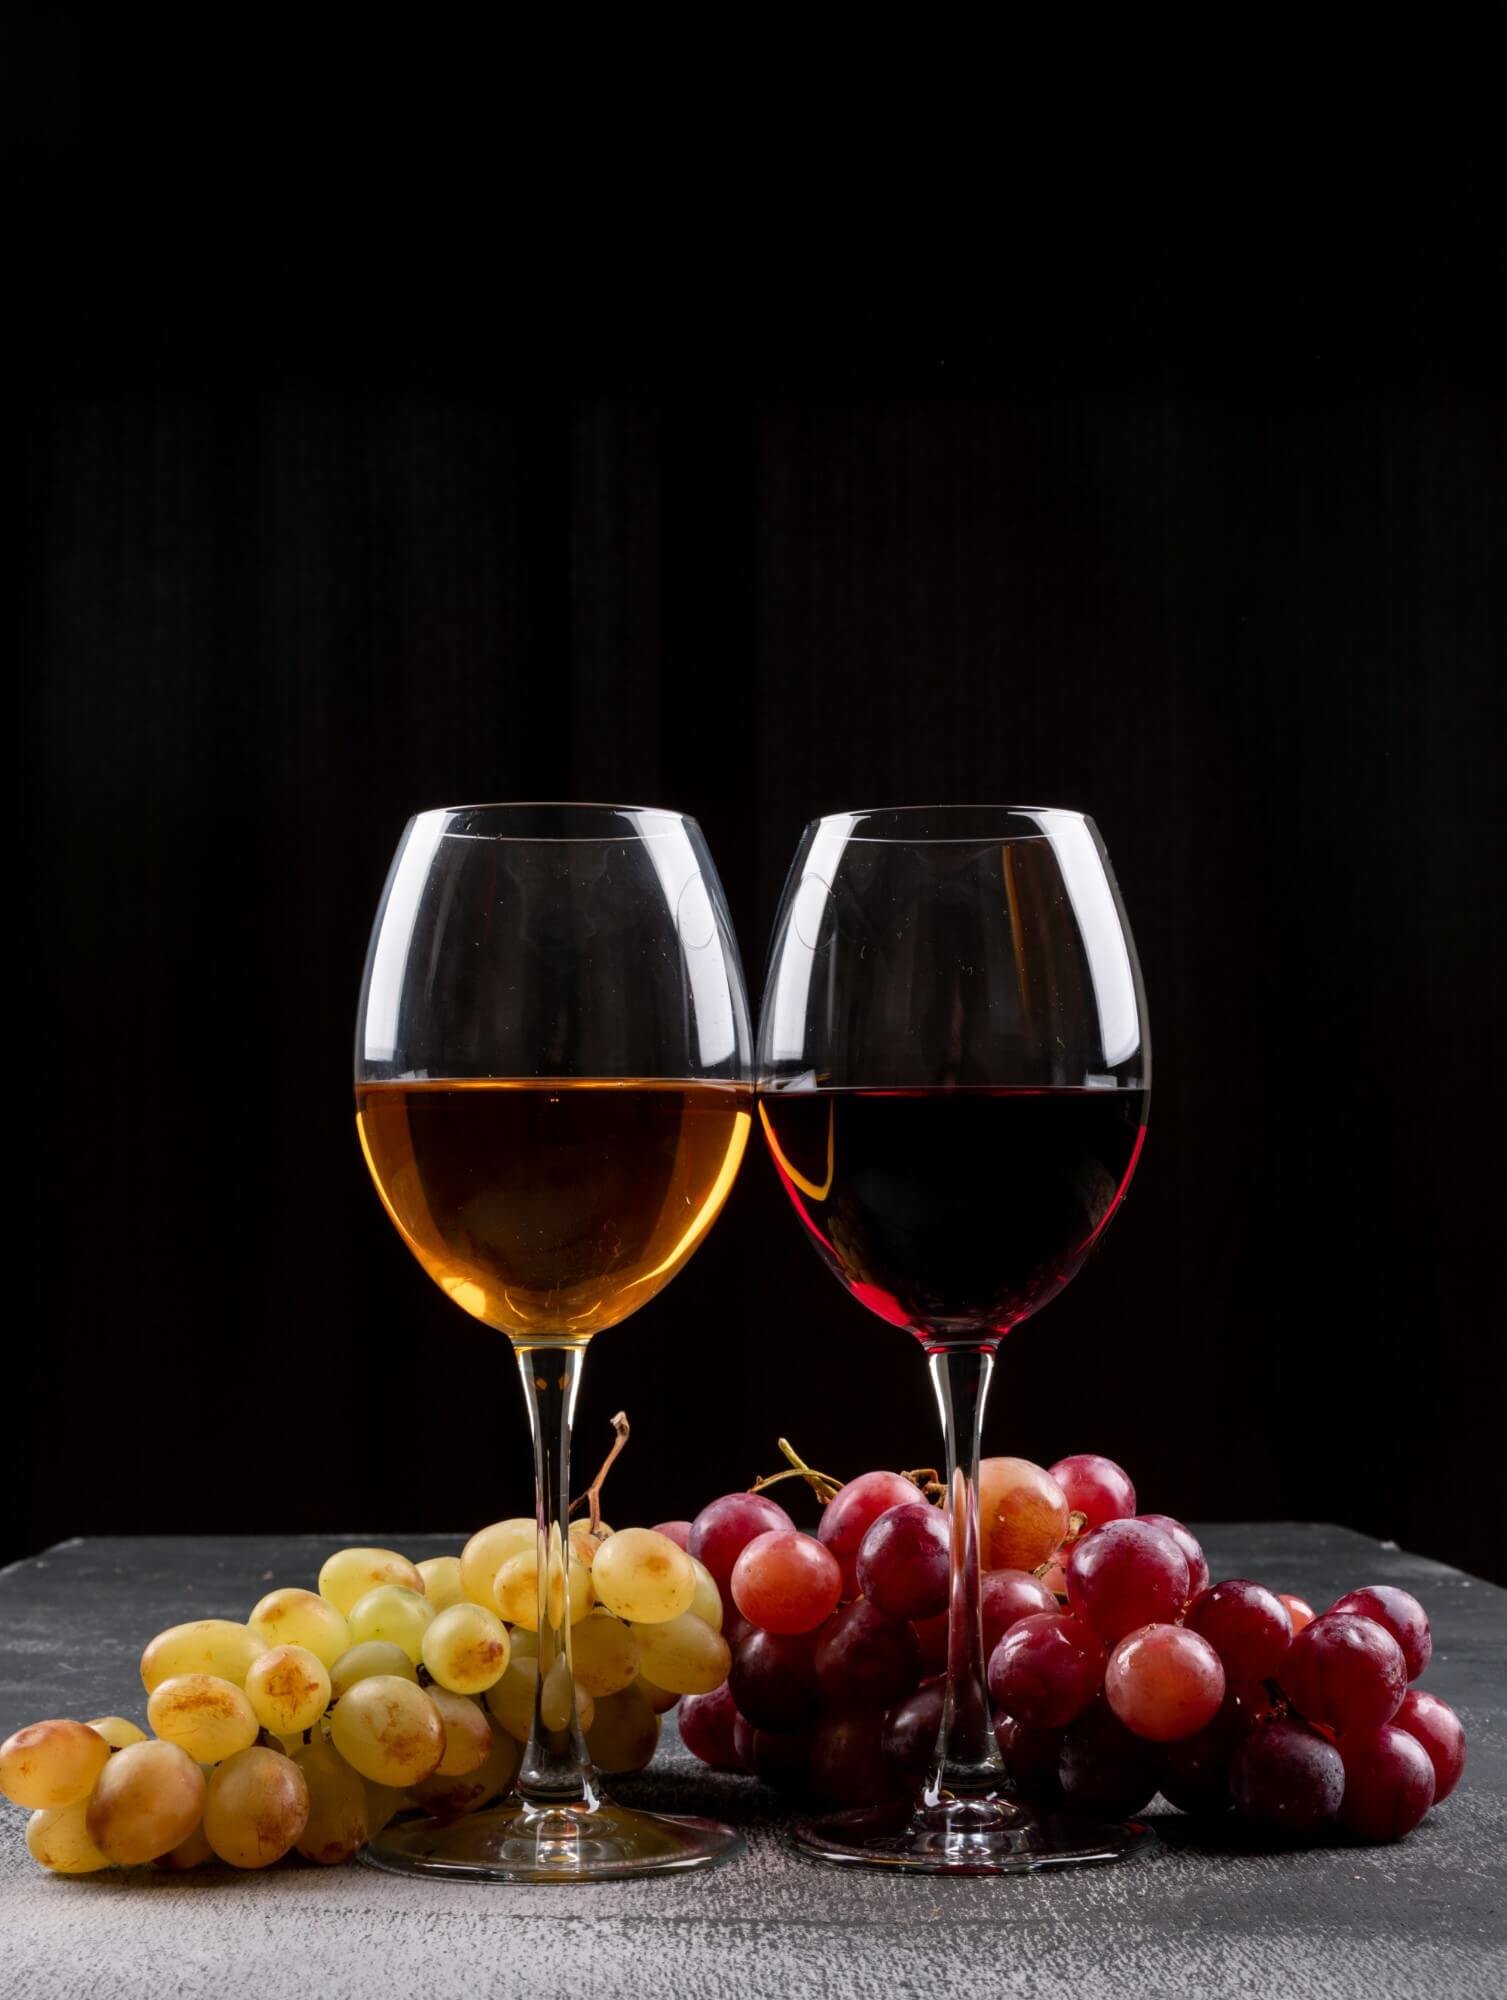 בציר לבציר: סודות ההצלחה שמאחורי ייצור יין איכותי מחוויית הגידול בכרמים